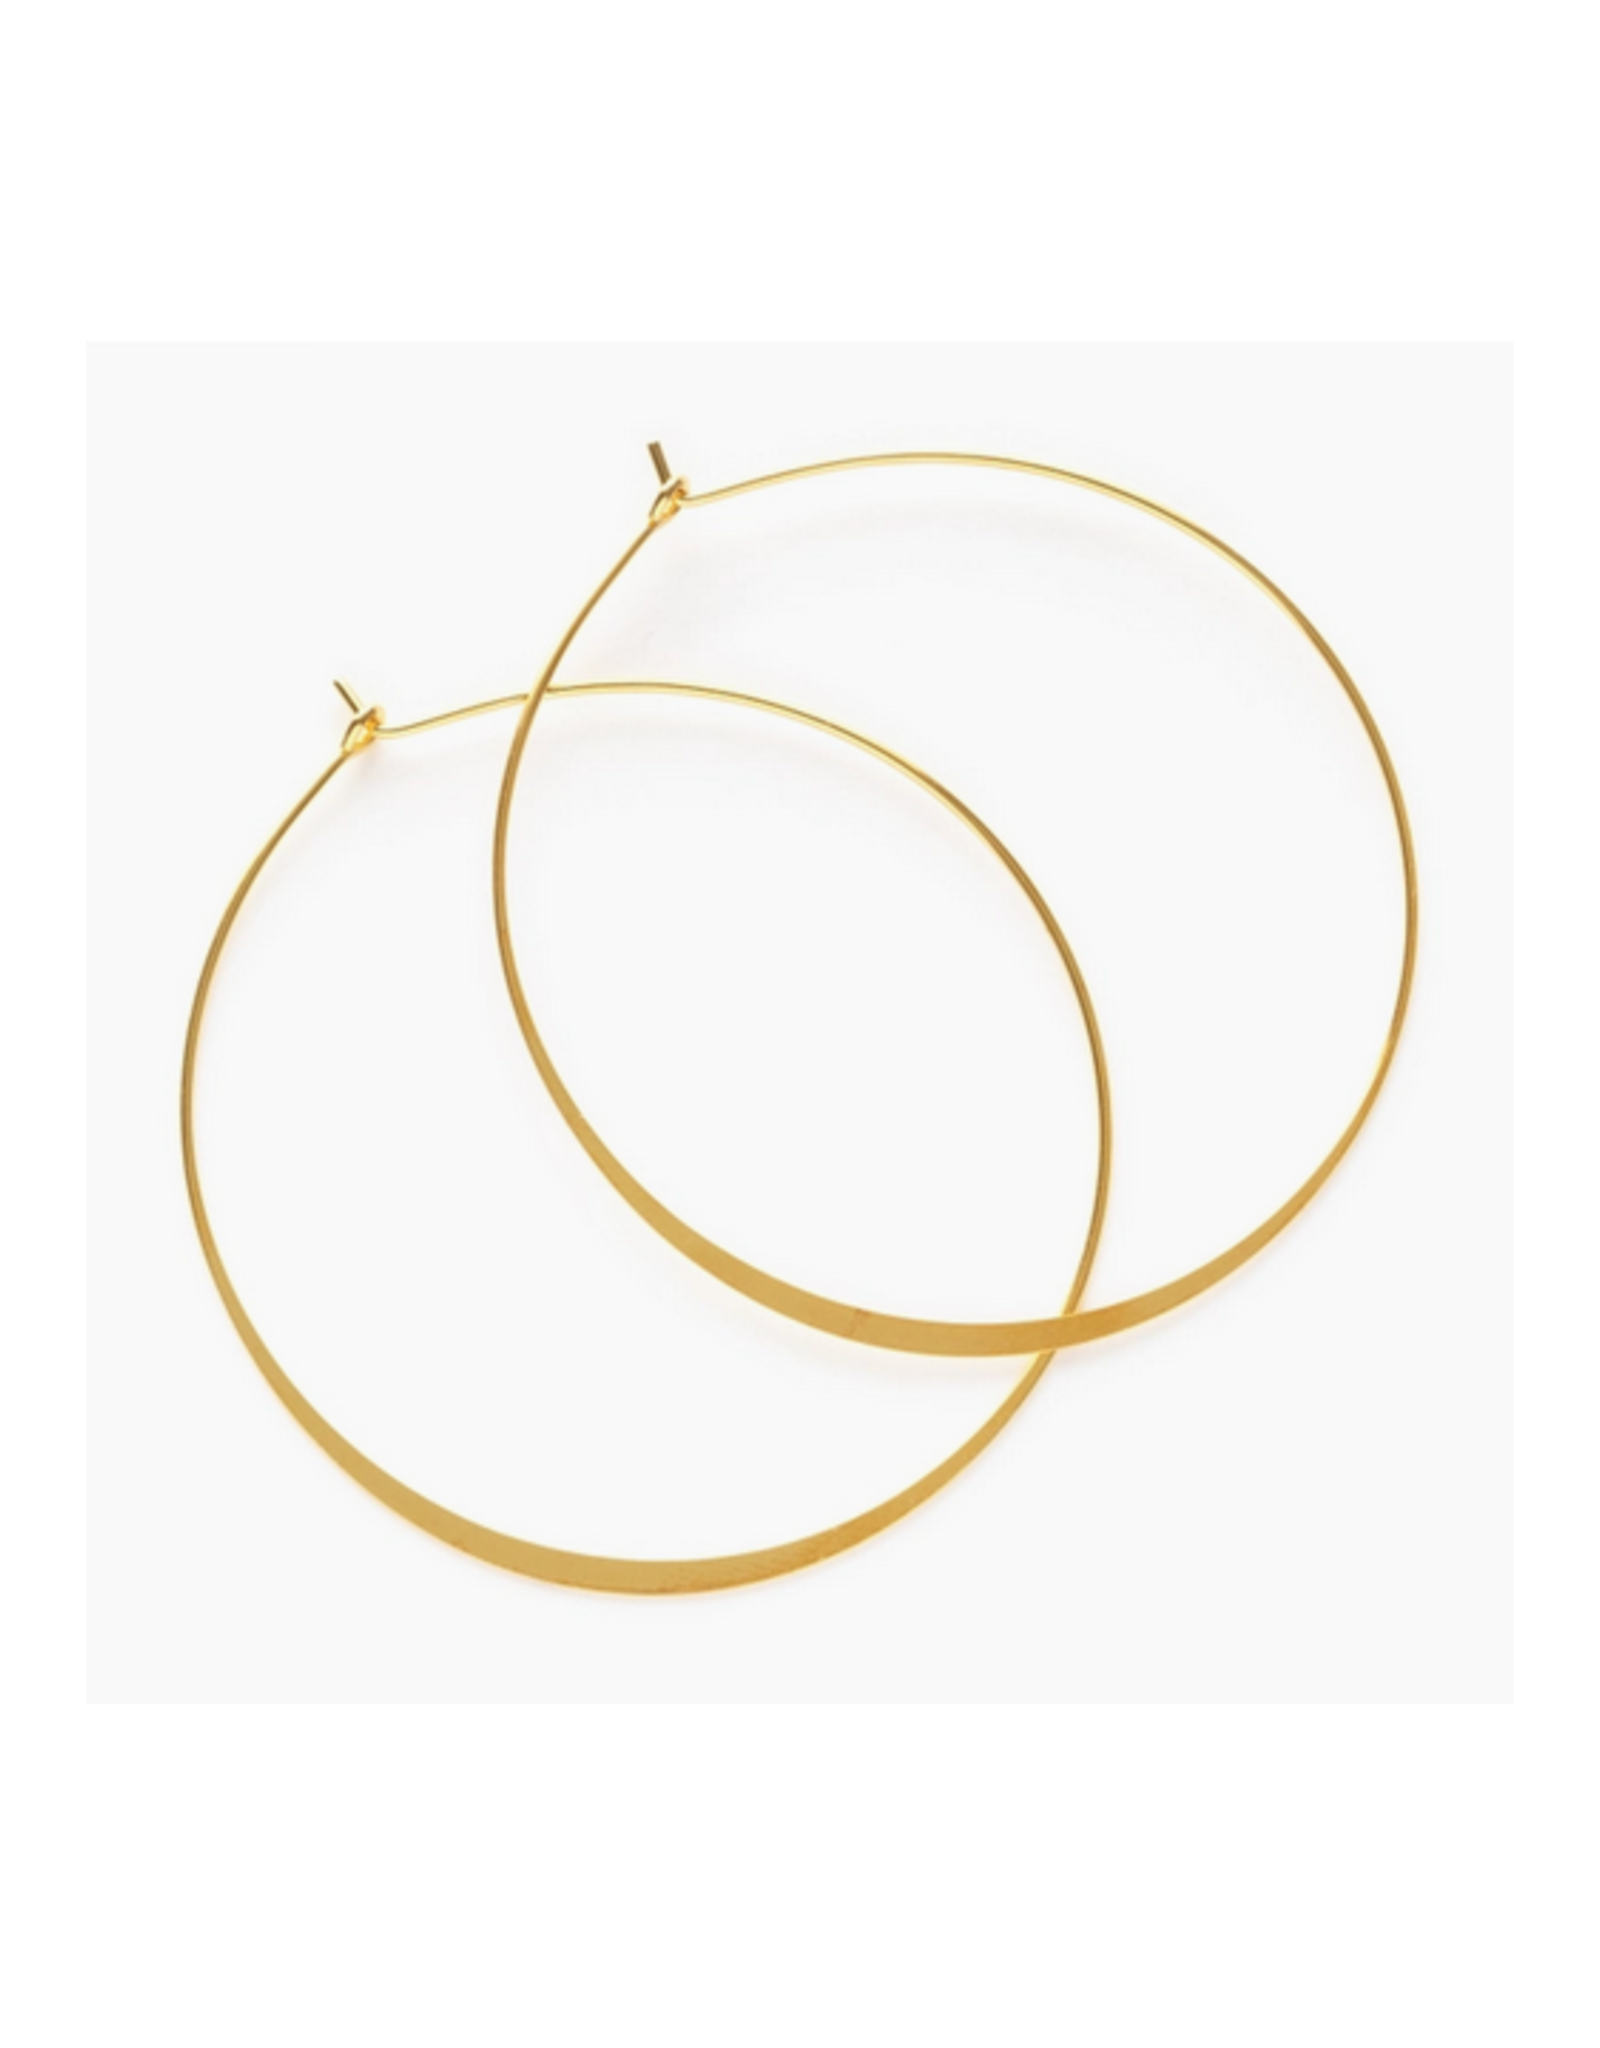 2" Round Hoop Earrings- Gold